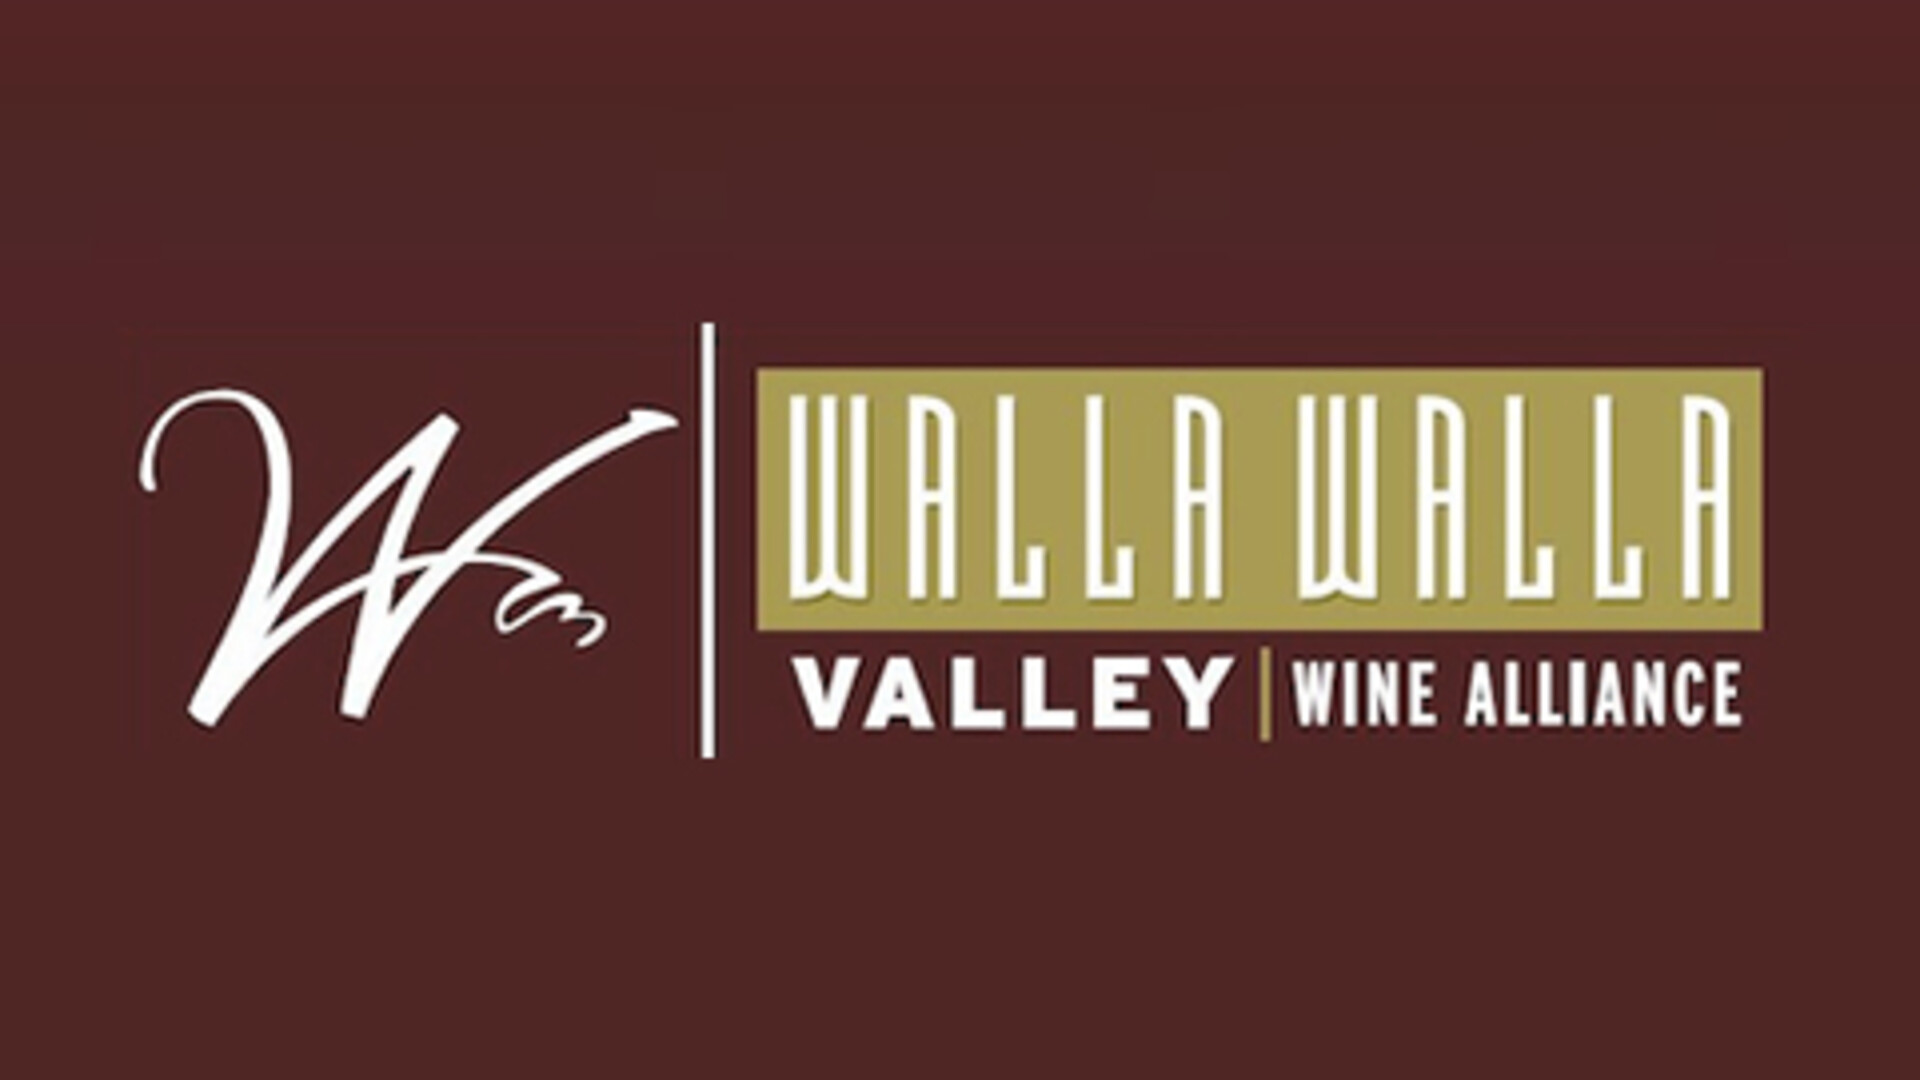 Walla Walla Top Wine Region Pt 1